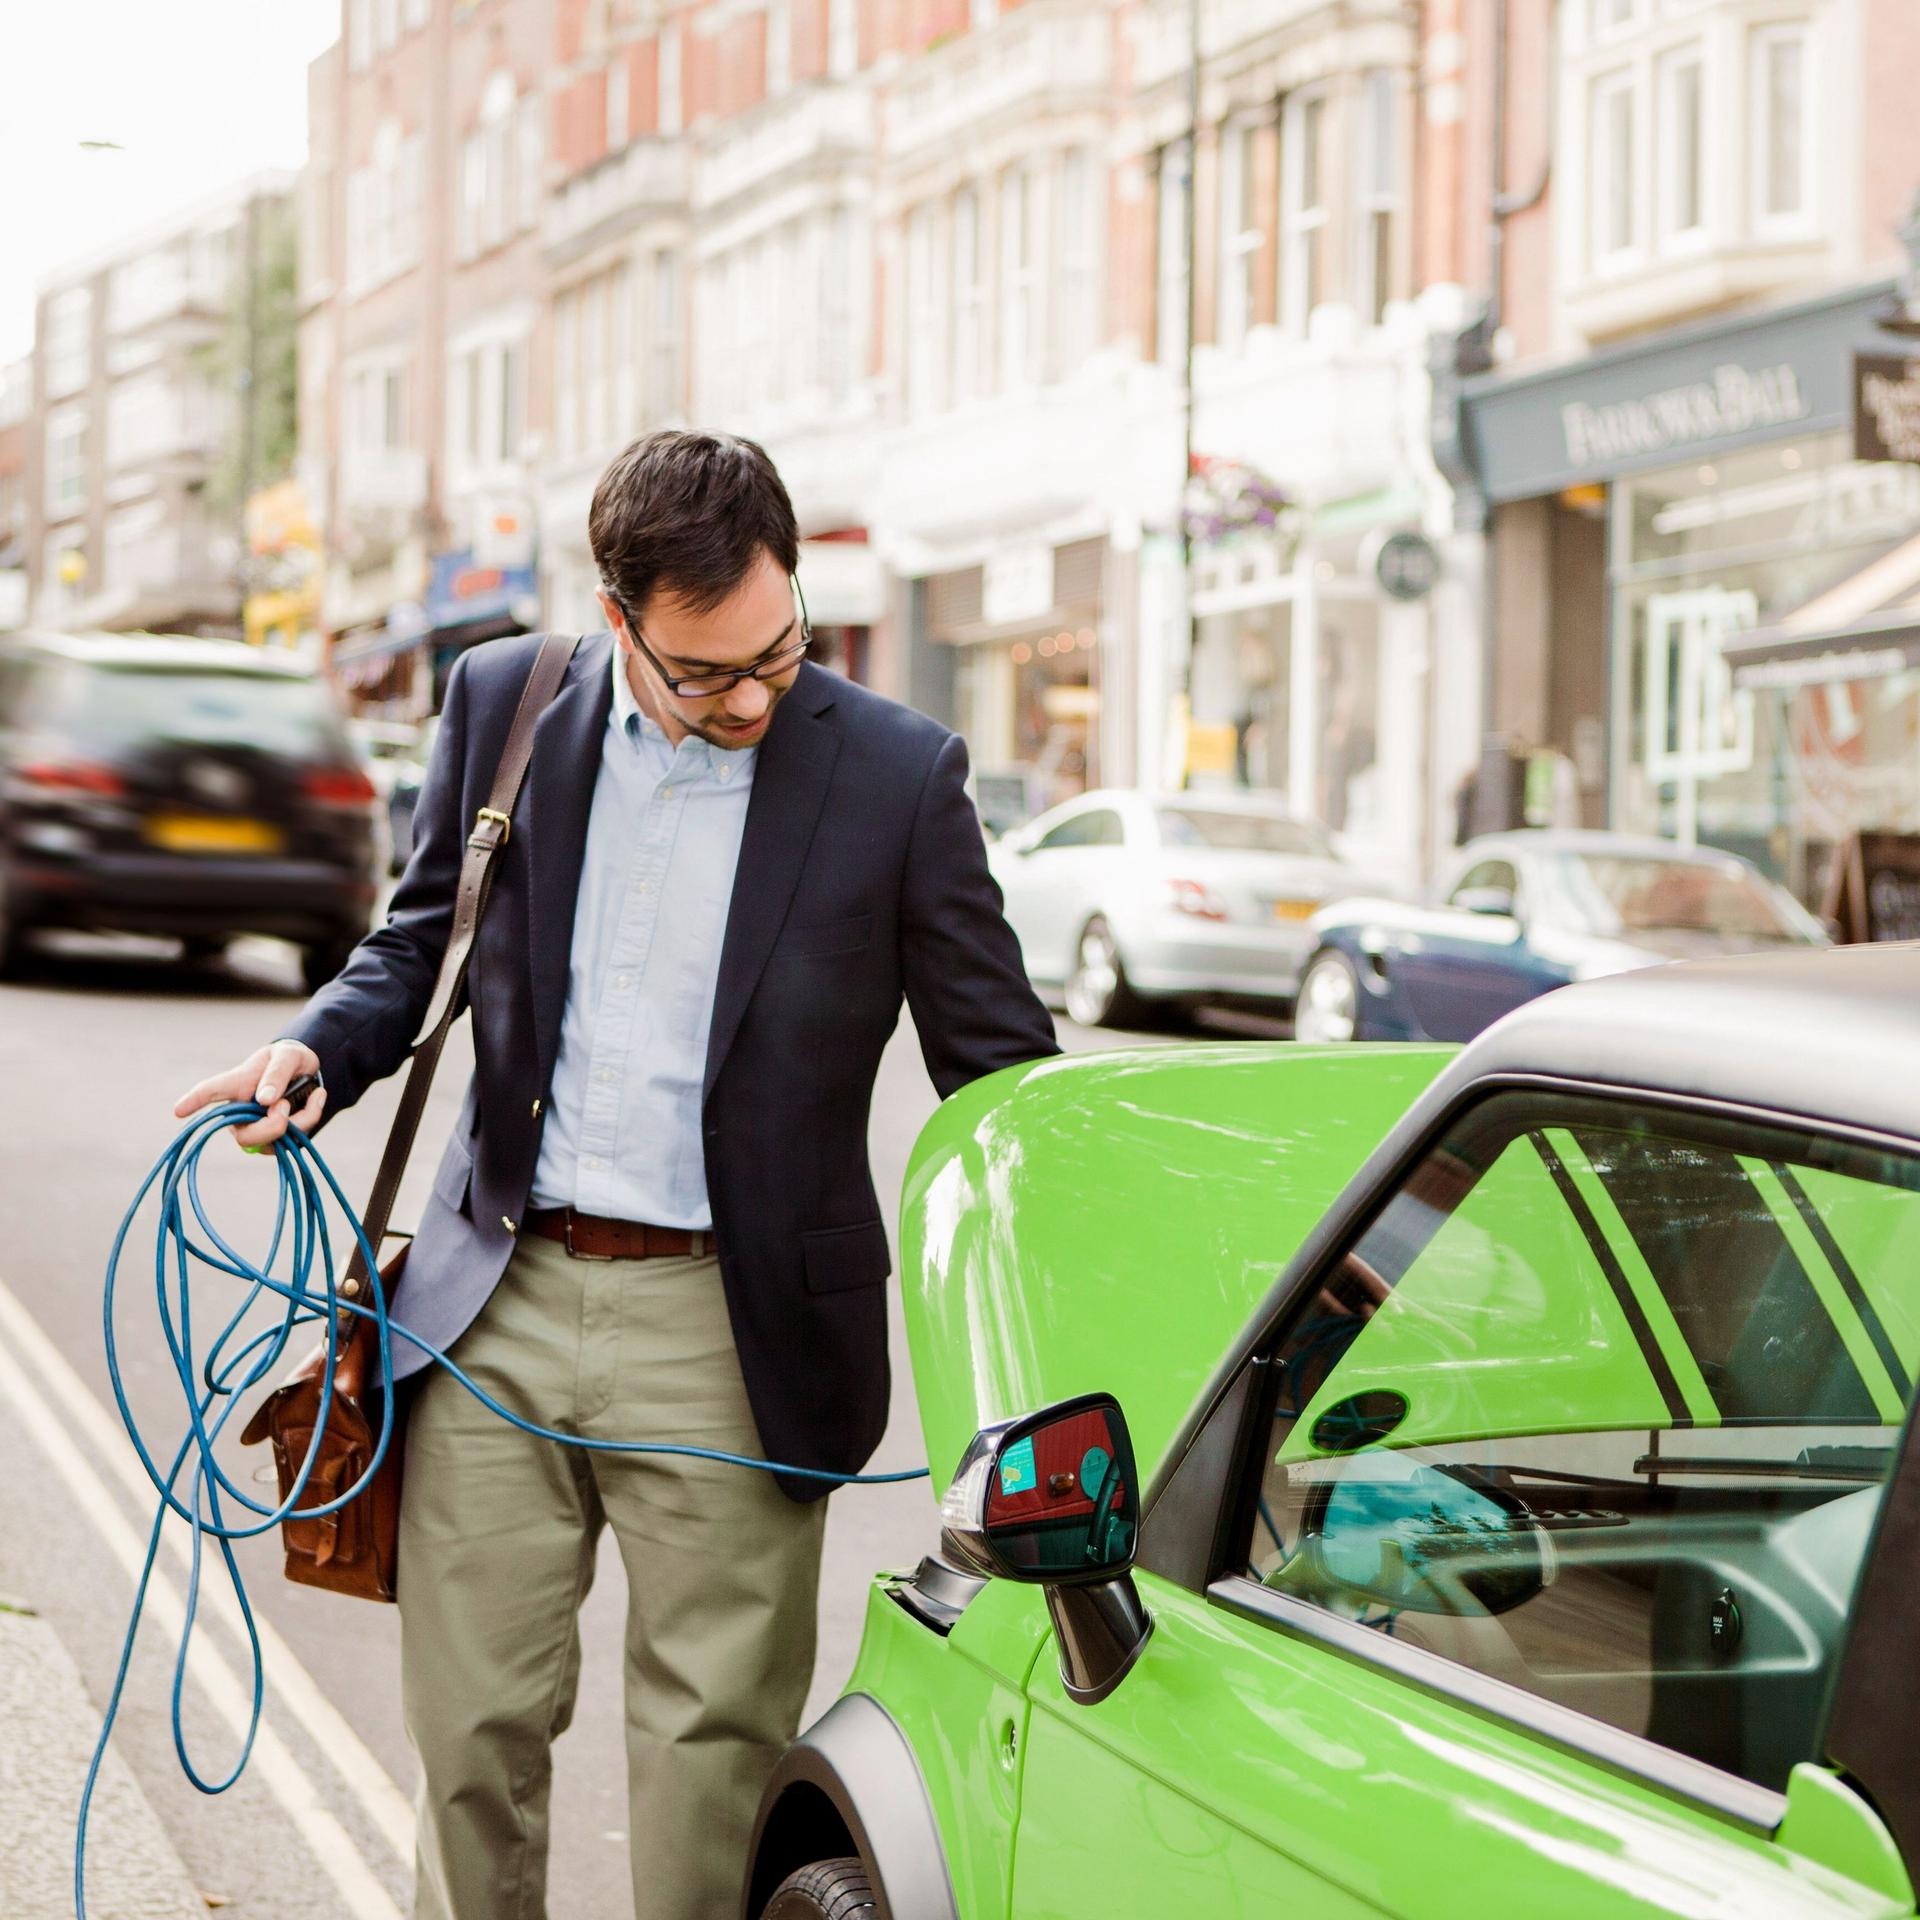 Mann im Anzug lädt ein auffällig grün lackiertes Elektroauto auf.